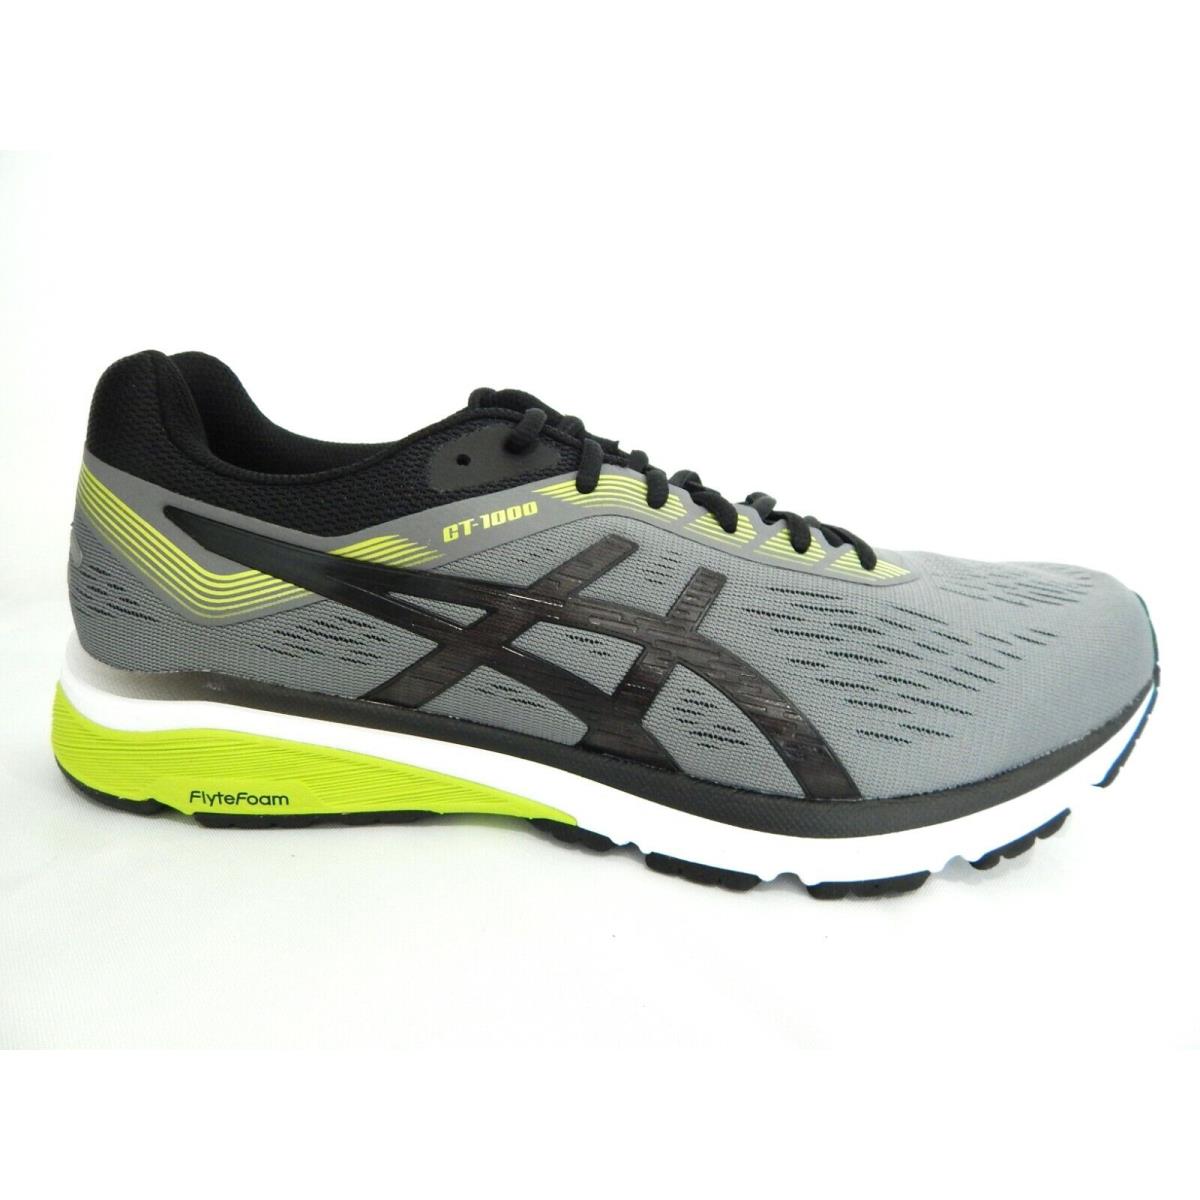 Asics GT-1000 7 Carbon Black 1011A042-021 Athletic Men Shoes Size 12.5